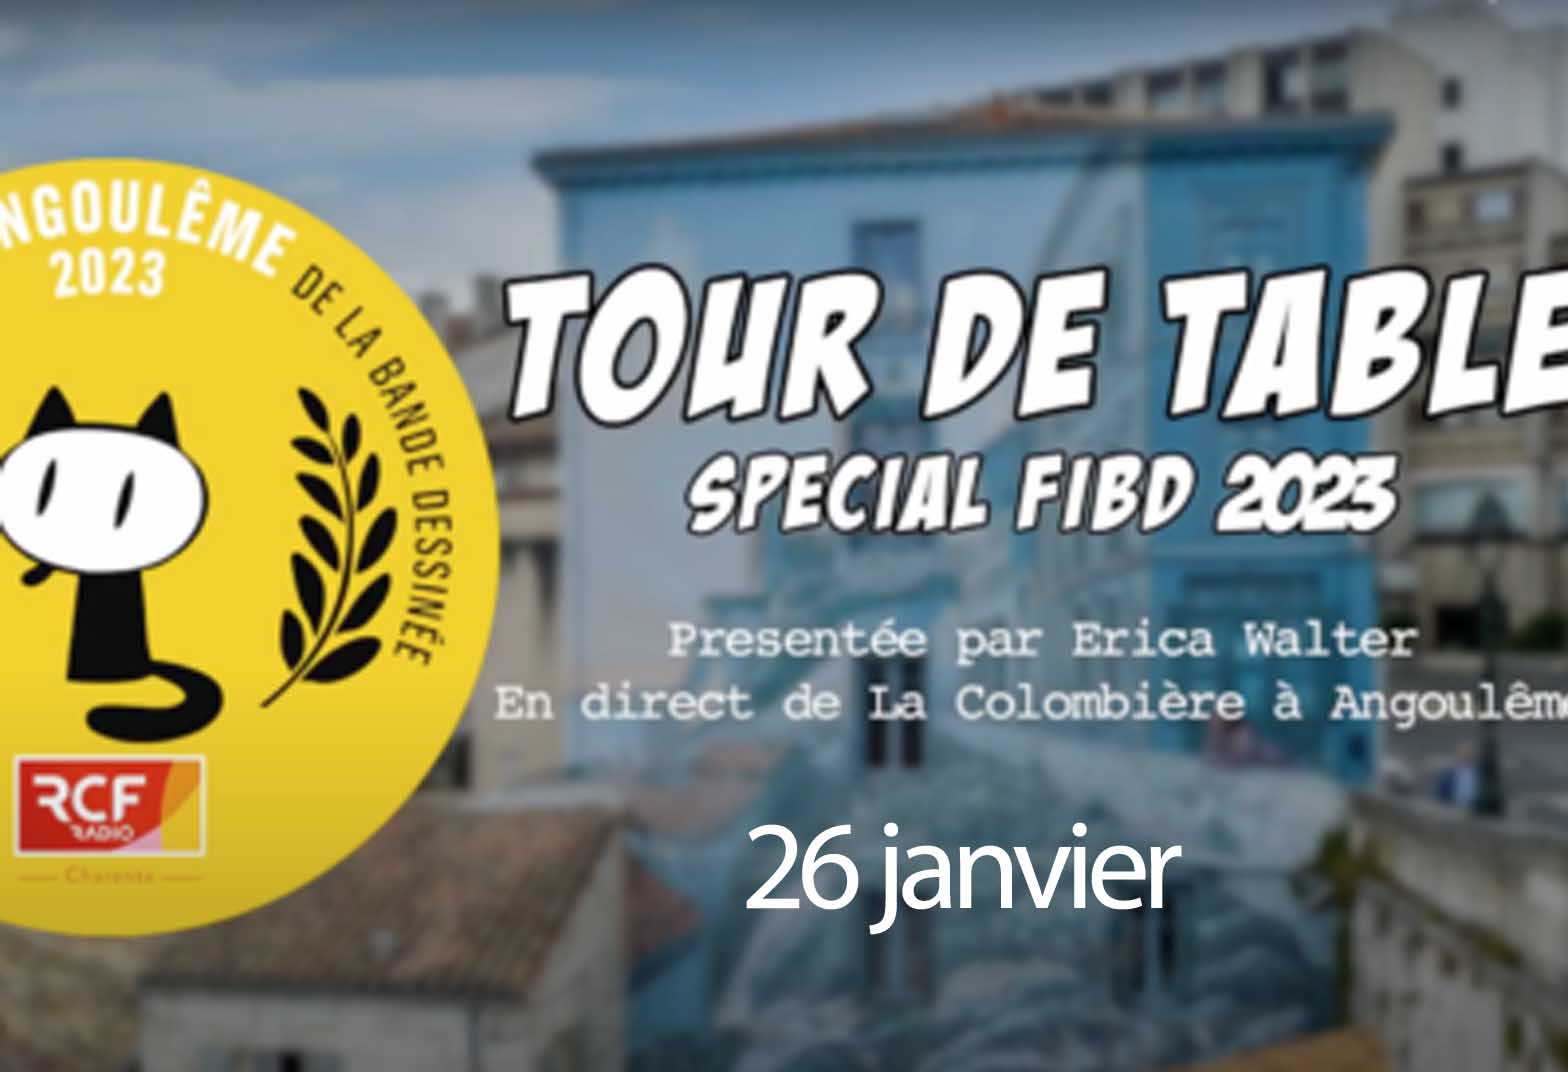 Tour de table special FIBD 2023 - 26 janvier